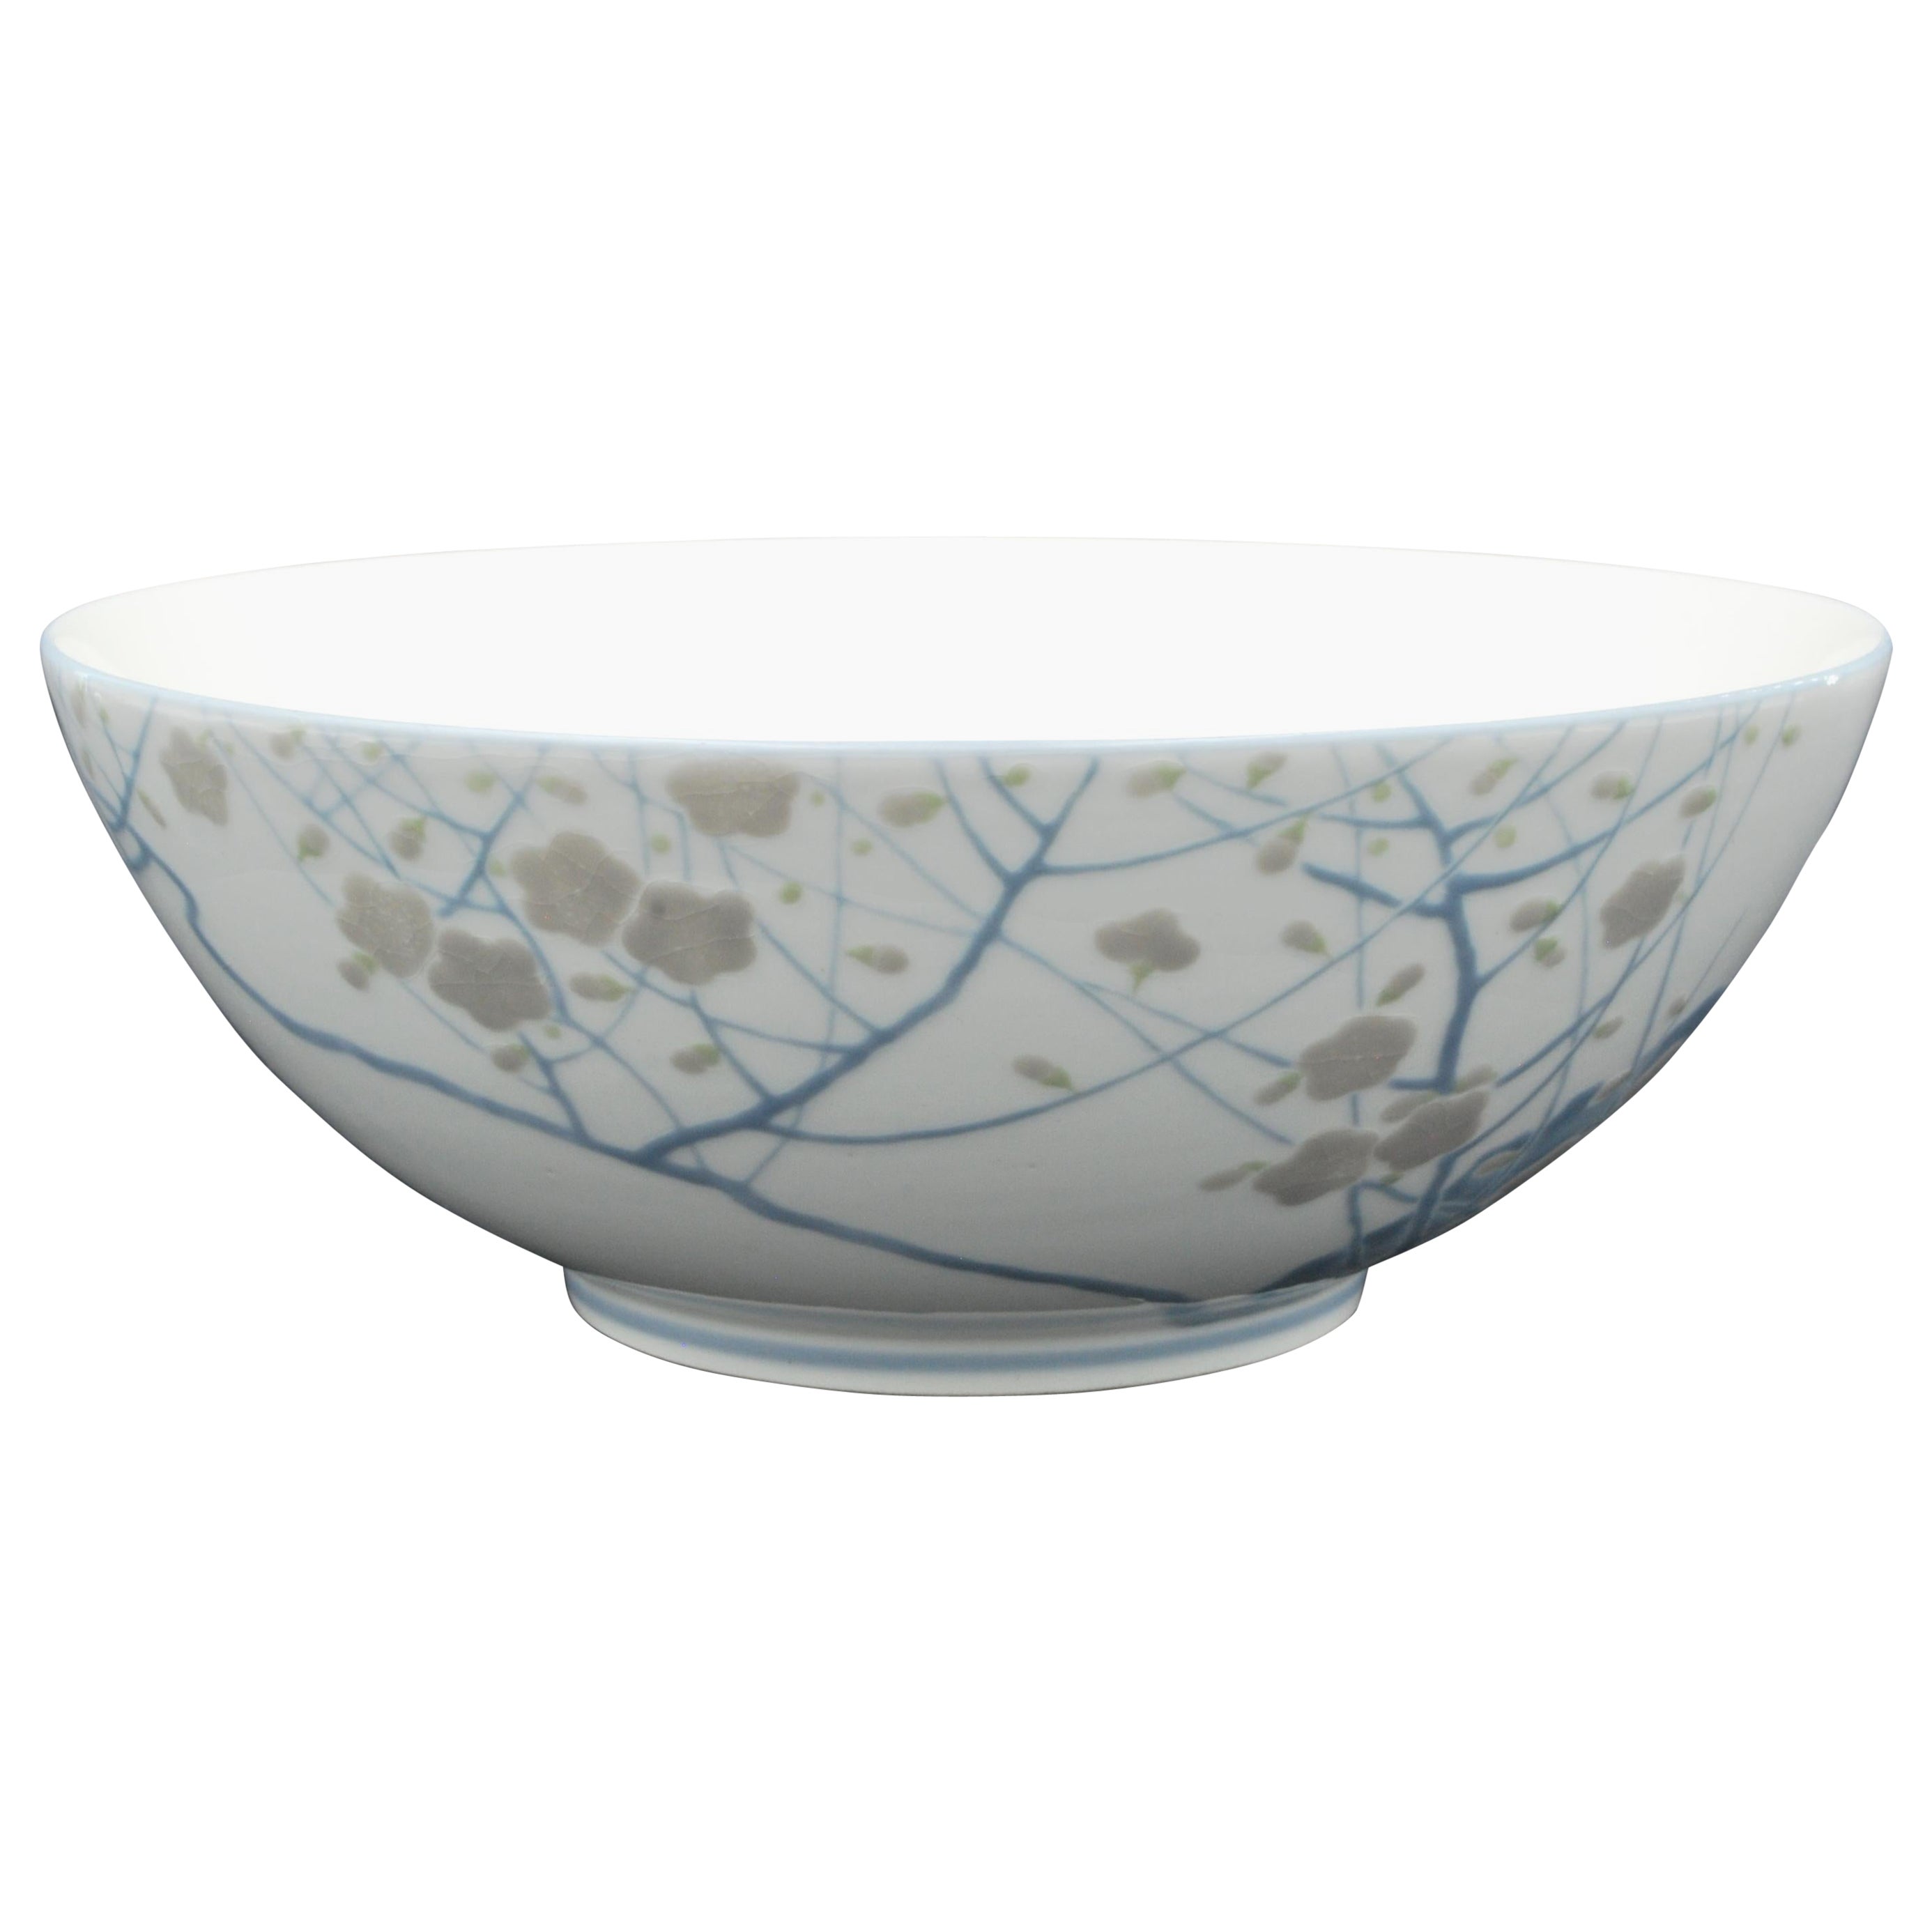 Porcelain Bowl, by Kinkozan. Japan, C1910